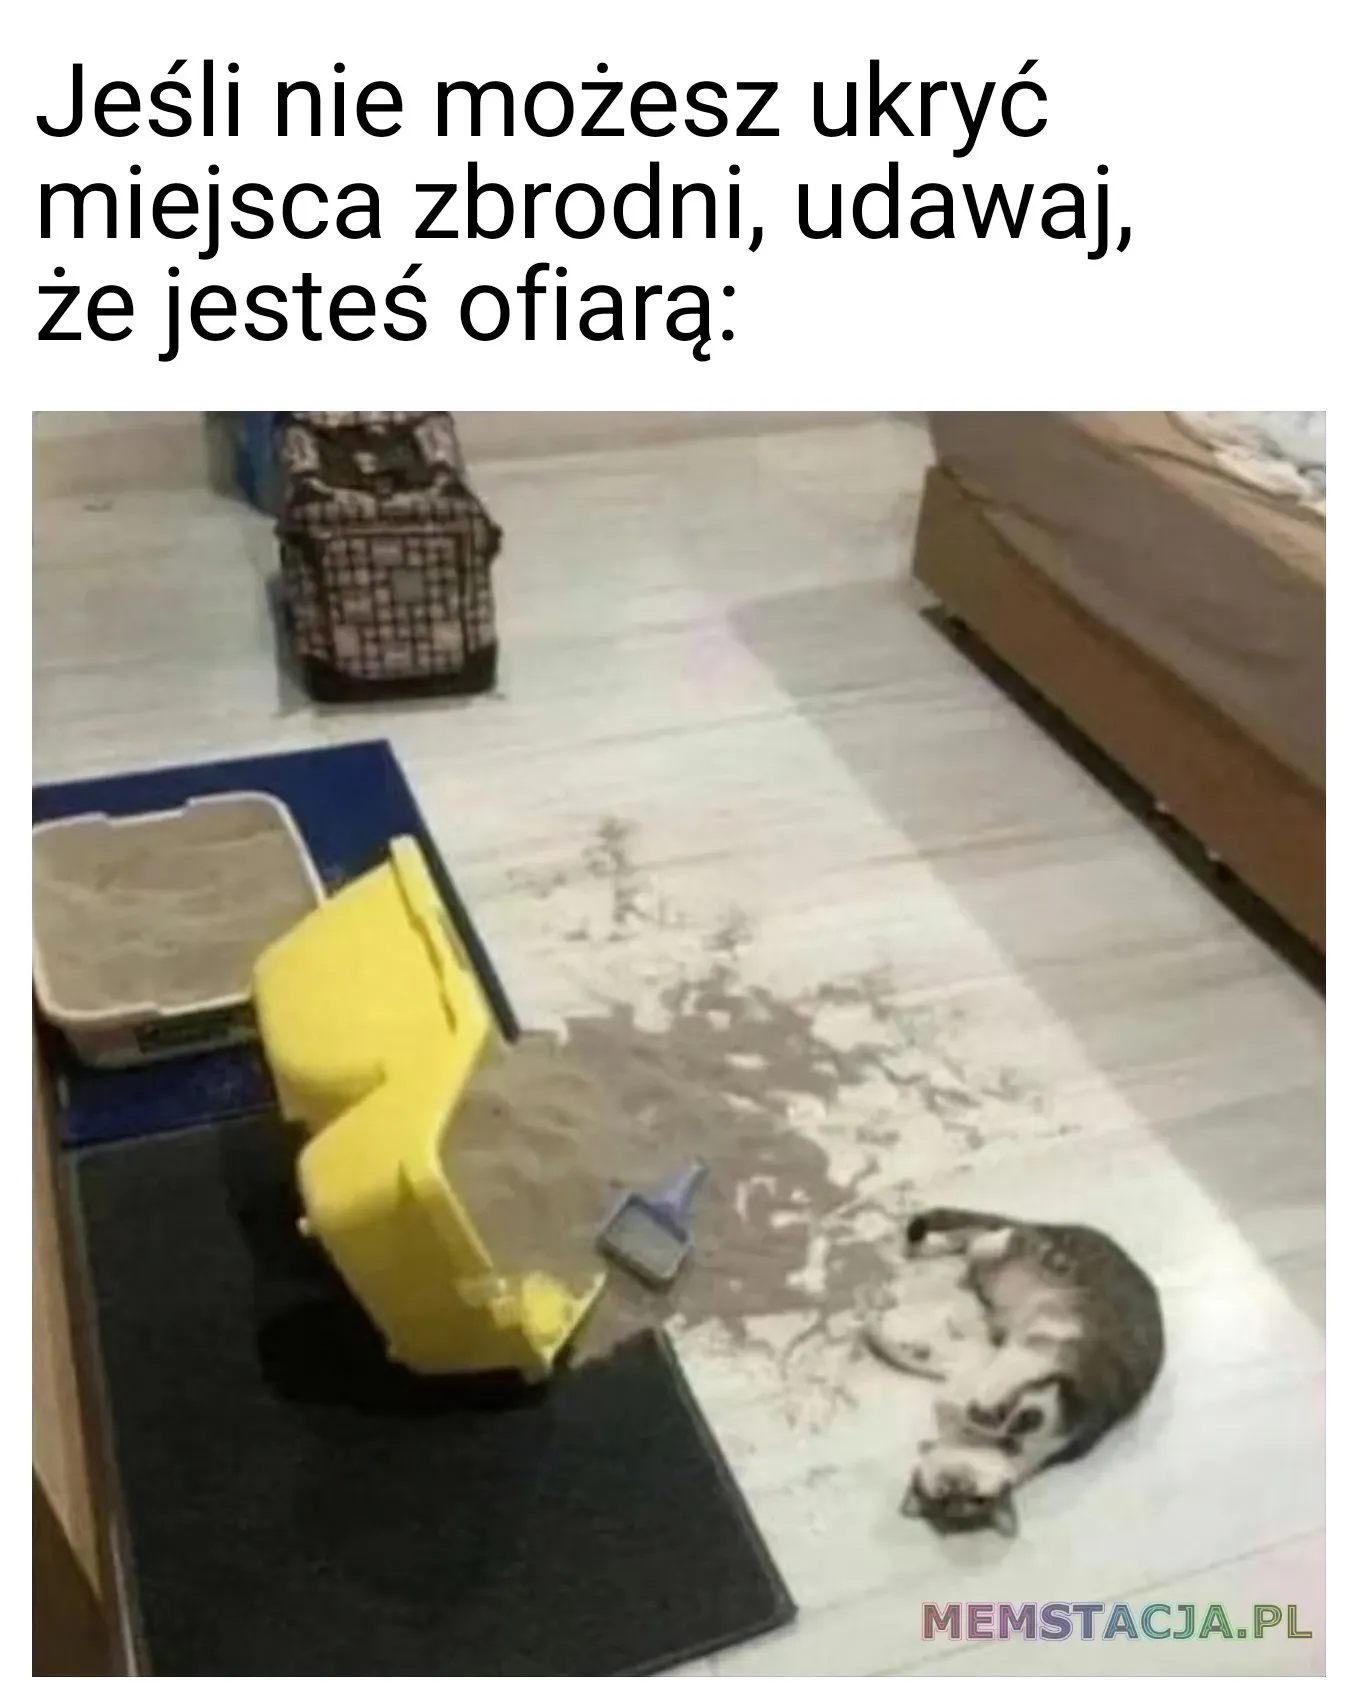 Mem przedstawiający kotka leżącego przy rozsypanym pojemniku z piaskiem: 'Jeśli nie możesz ukryć miejsca zbrodni, udawaj, że jesteś ofiarą'